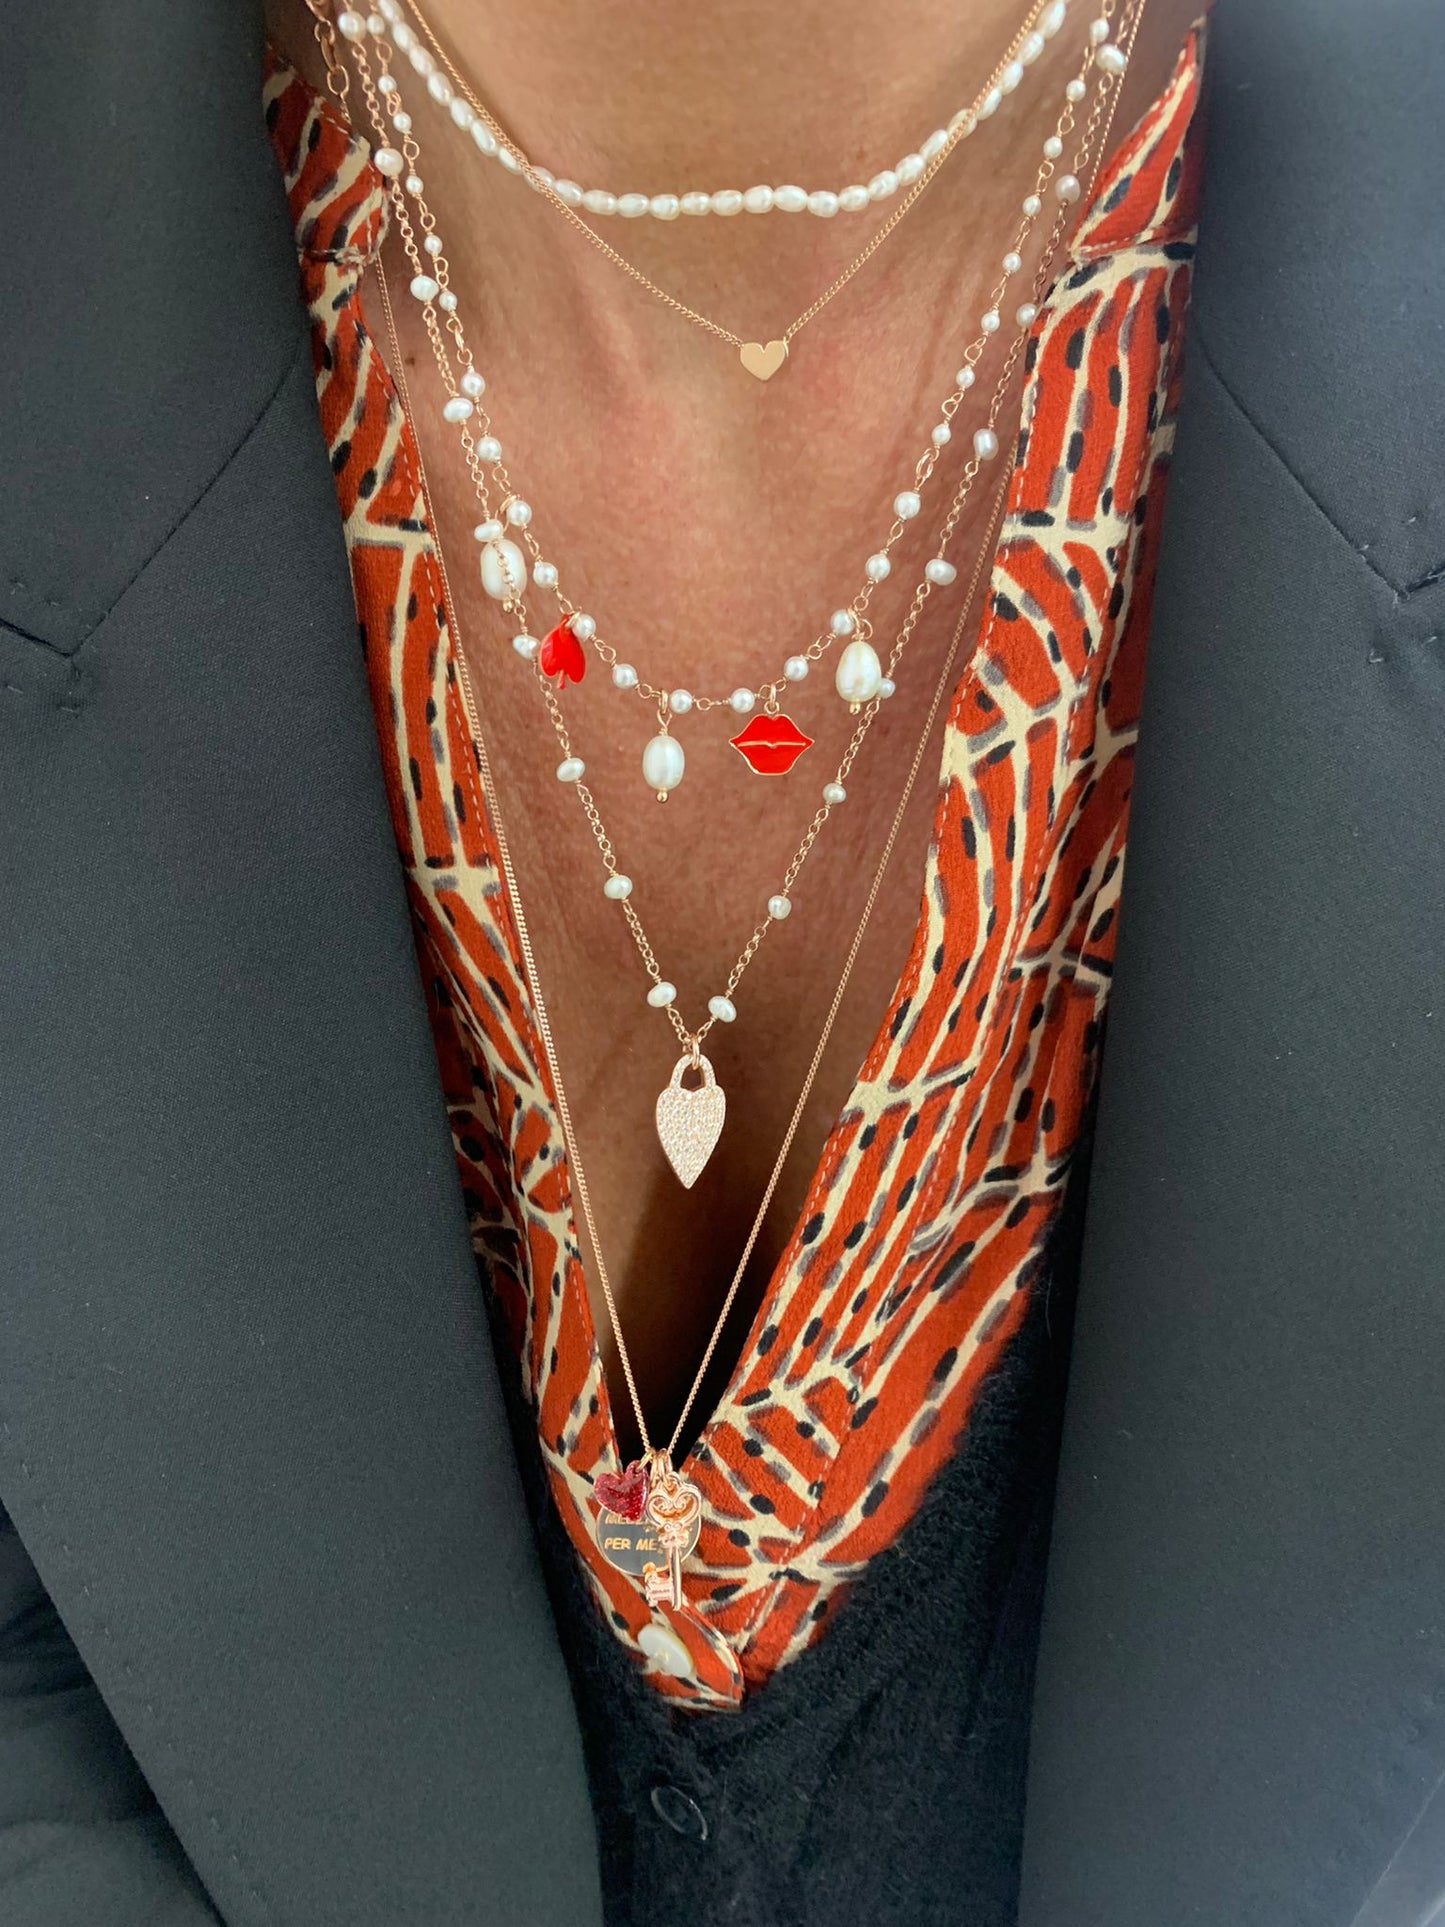 Collana catena grumette rosé cm 60 con targhetta da 1,2 cm con inciso “IL MEGLIO PER ME” , Chiave e cuore glitter disponibile in 4 colori